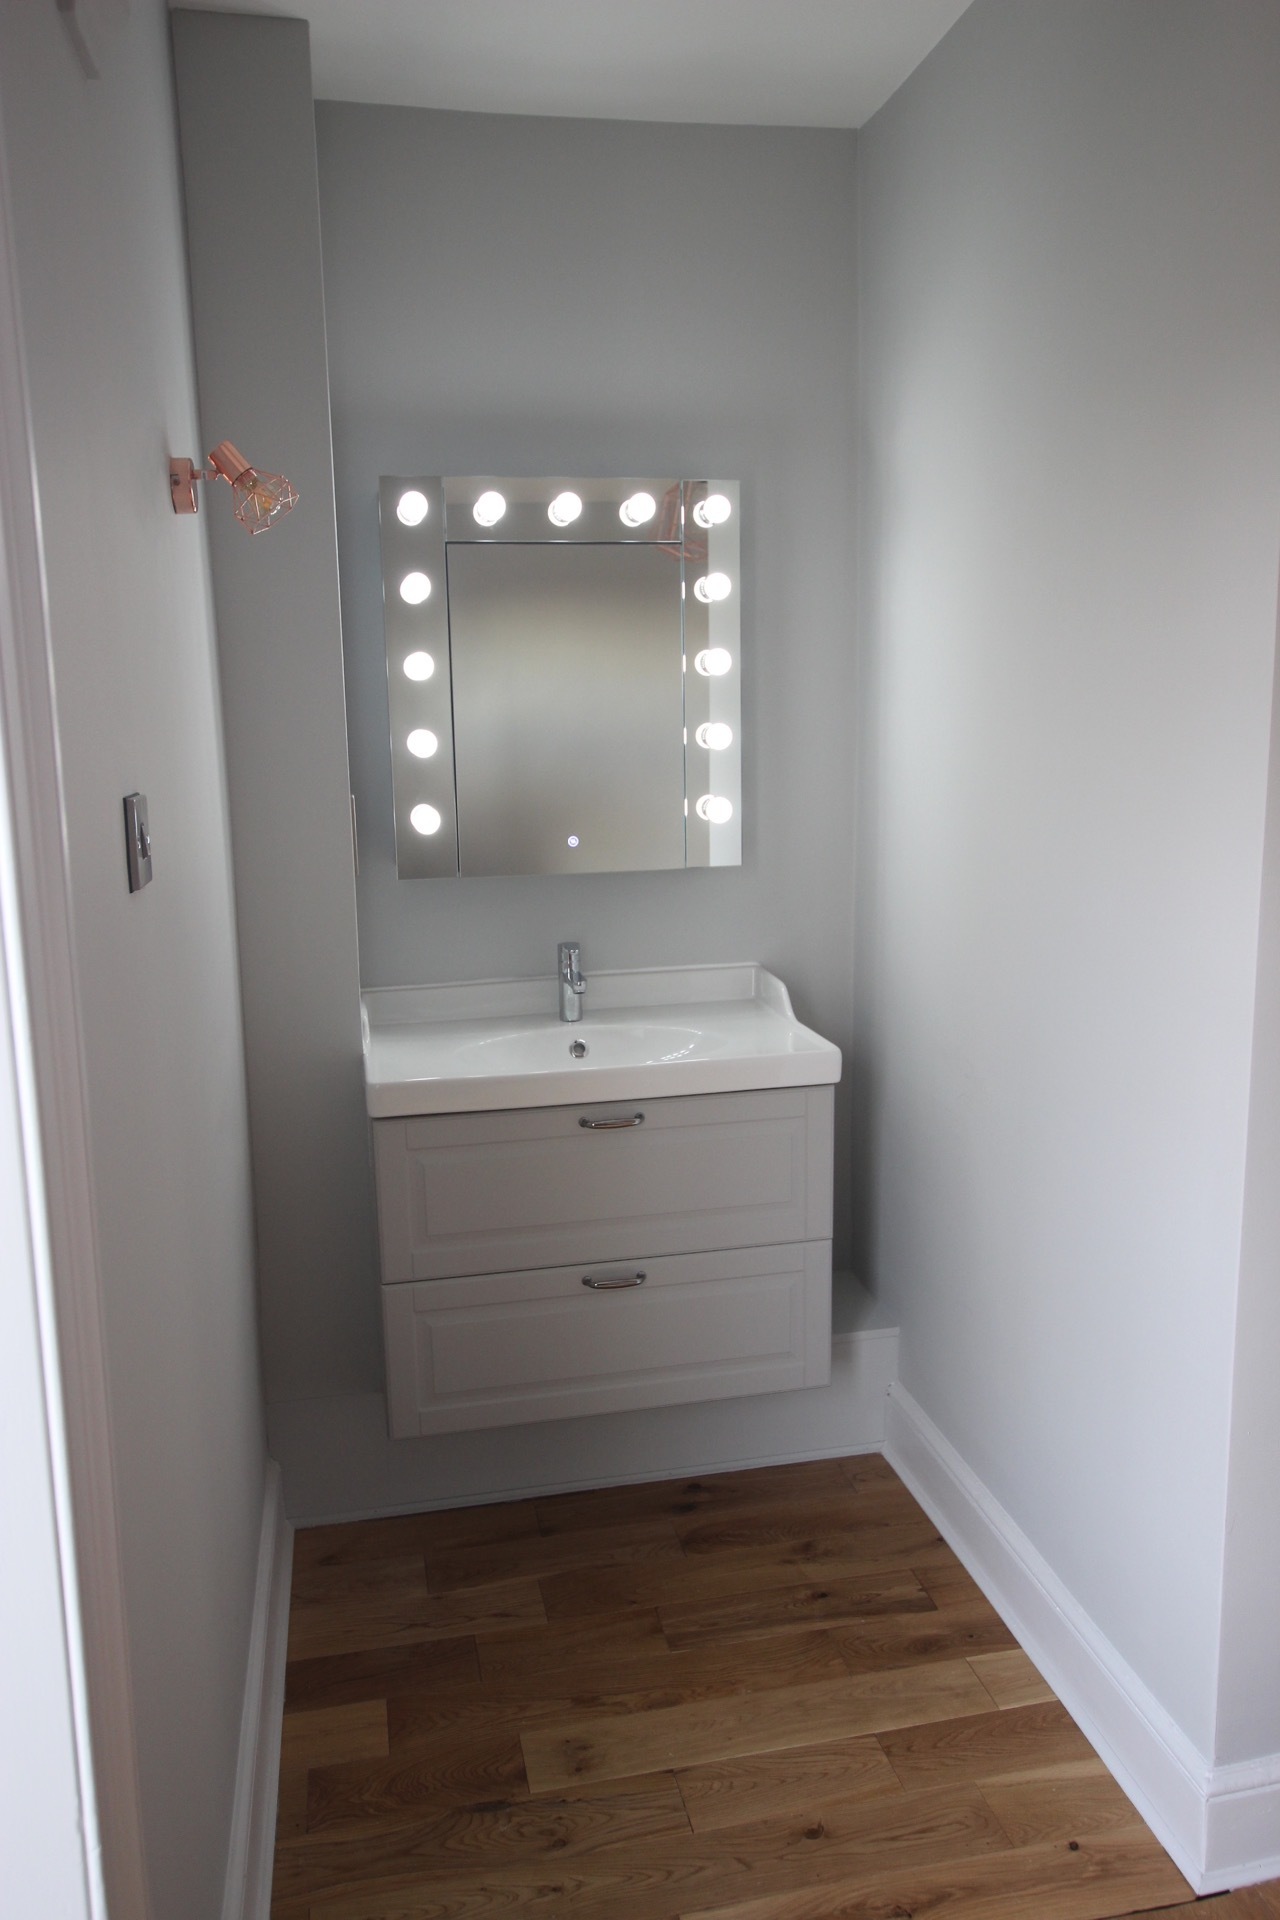 New vanity area in first floor bedroom